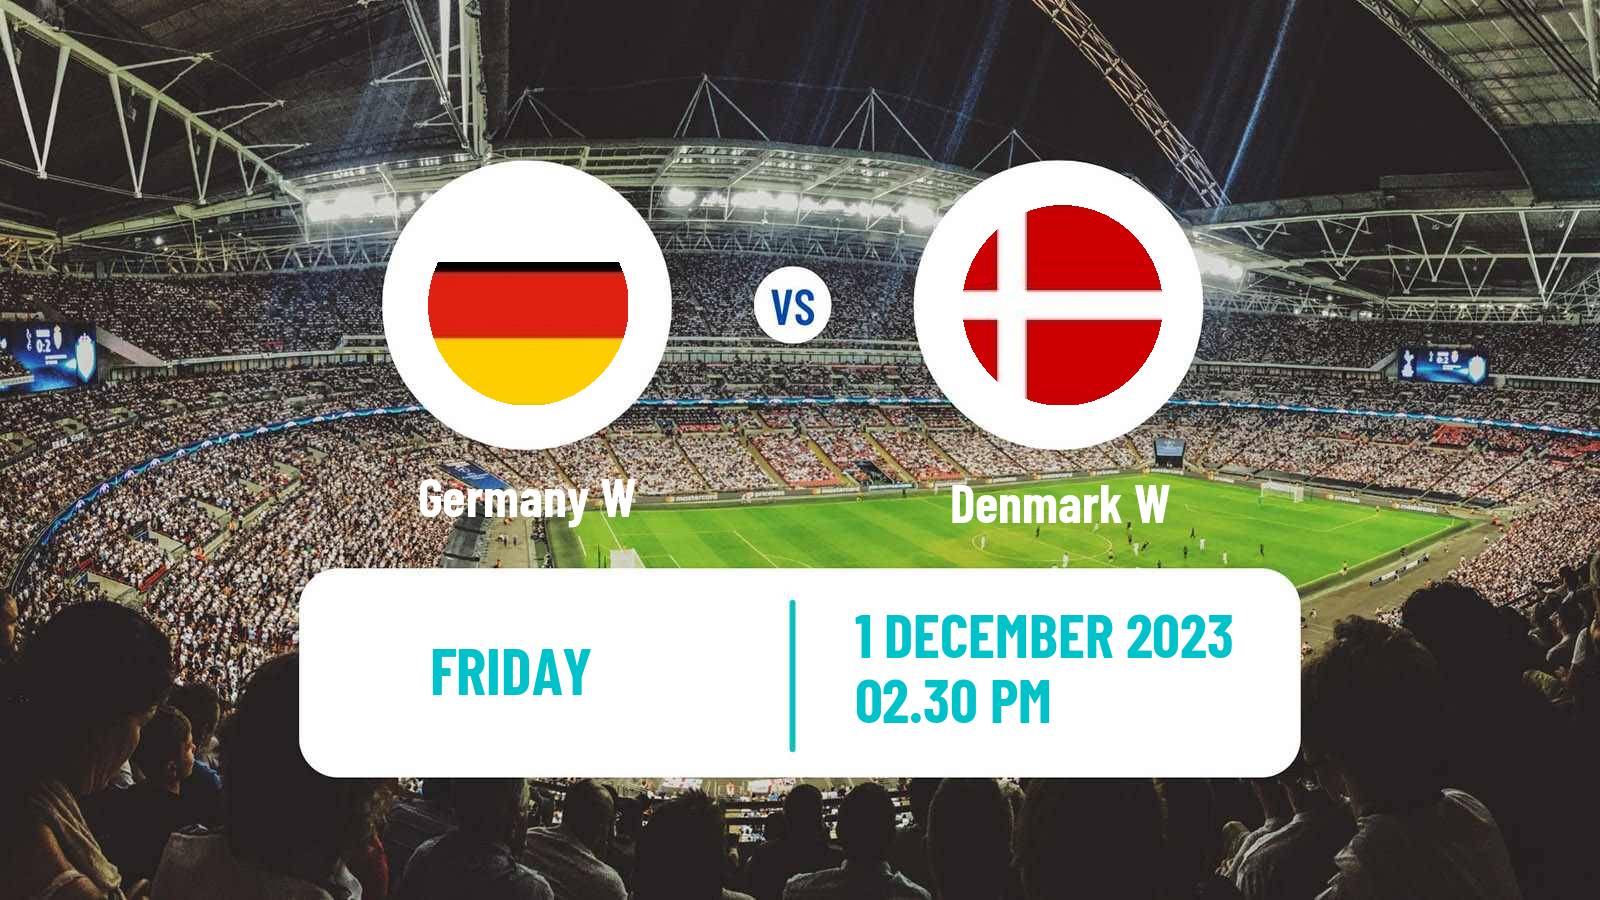 Soccer UEFA Nations League Women Germany W - Denmark W